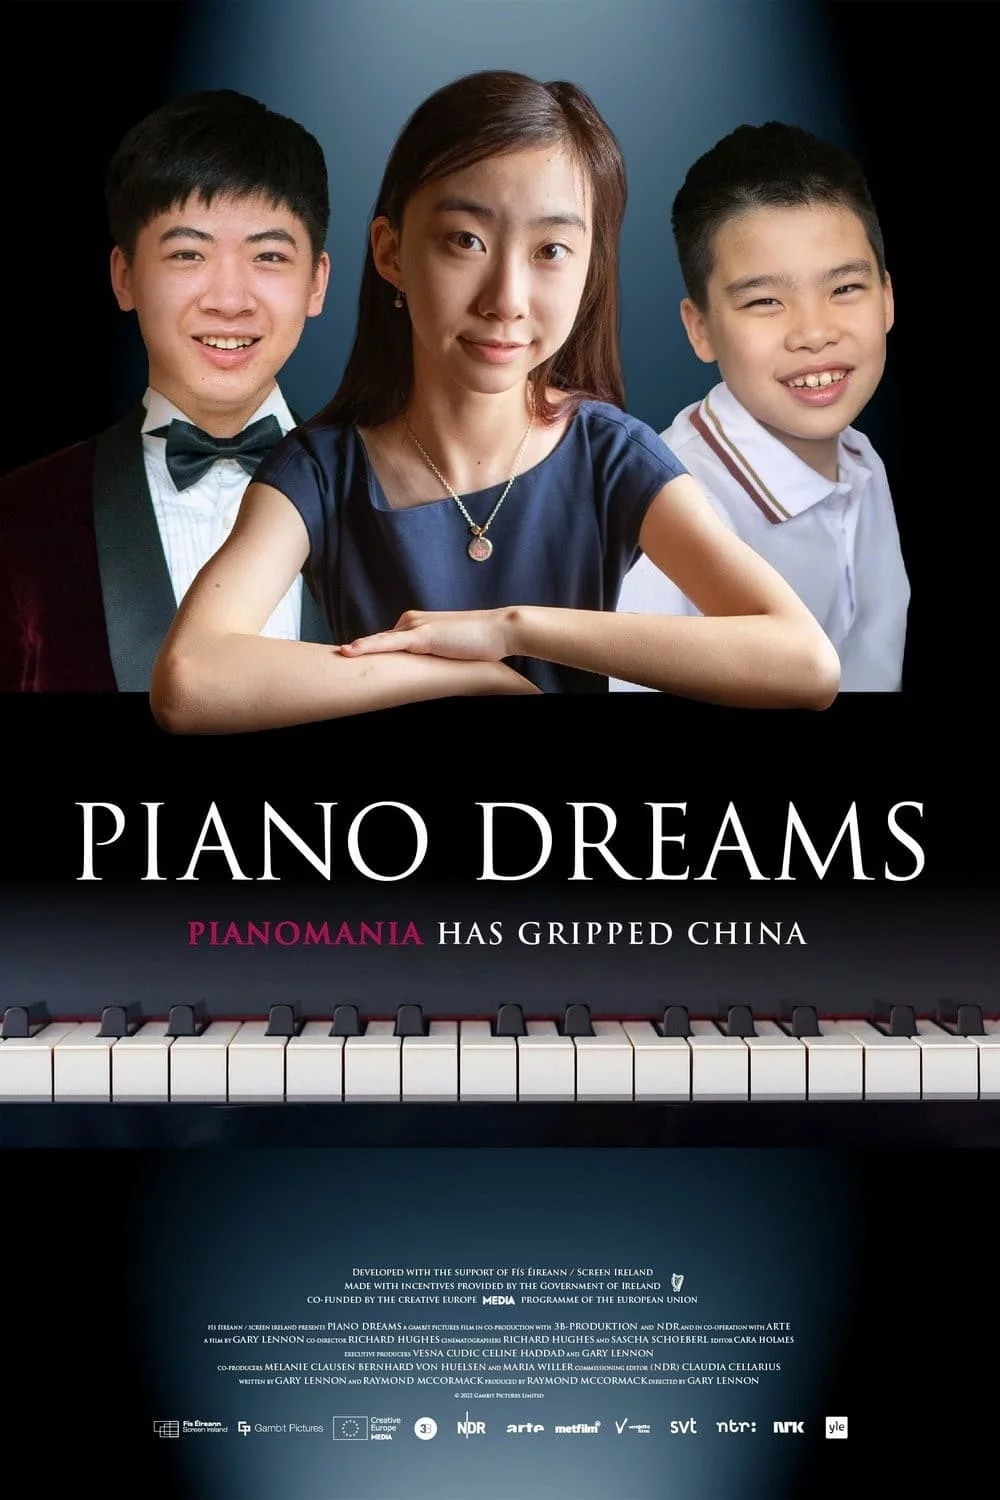 Photo 2 du film : Les enfants pianistes chinois et leur rêve de carrière